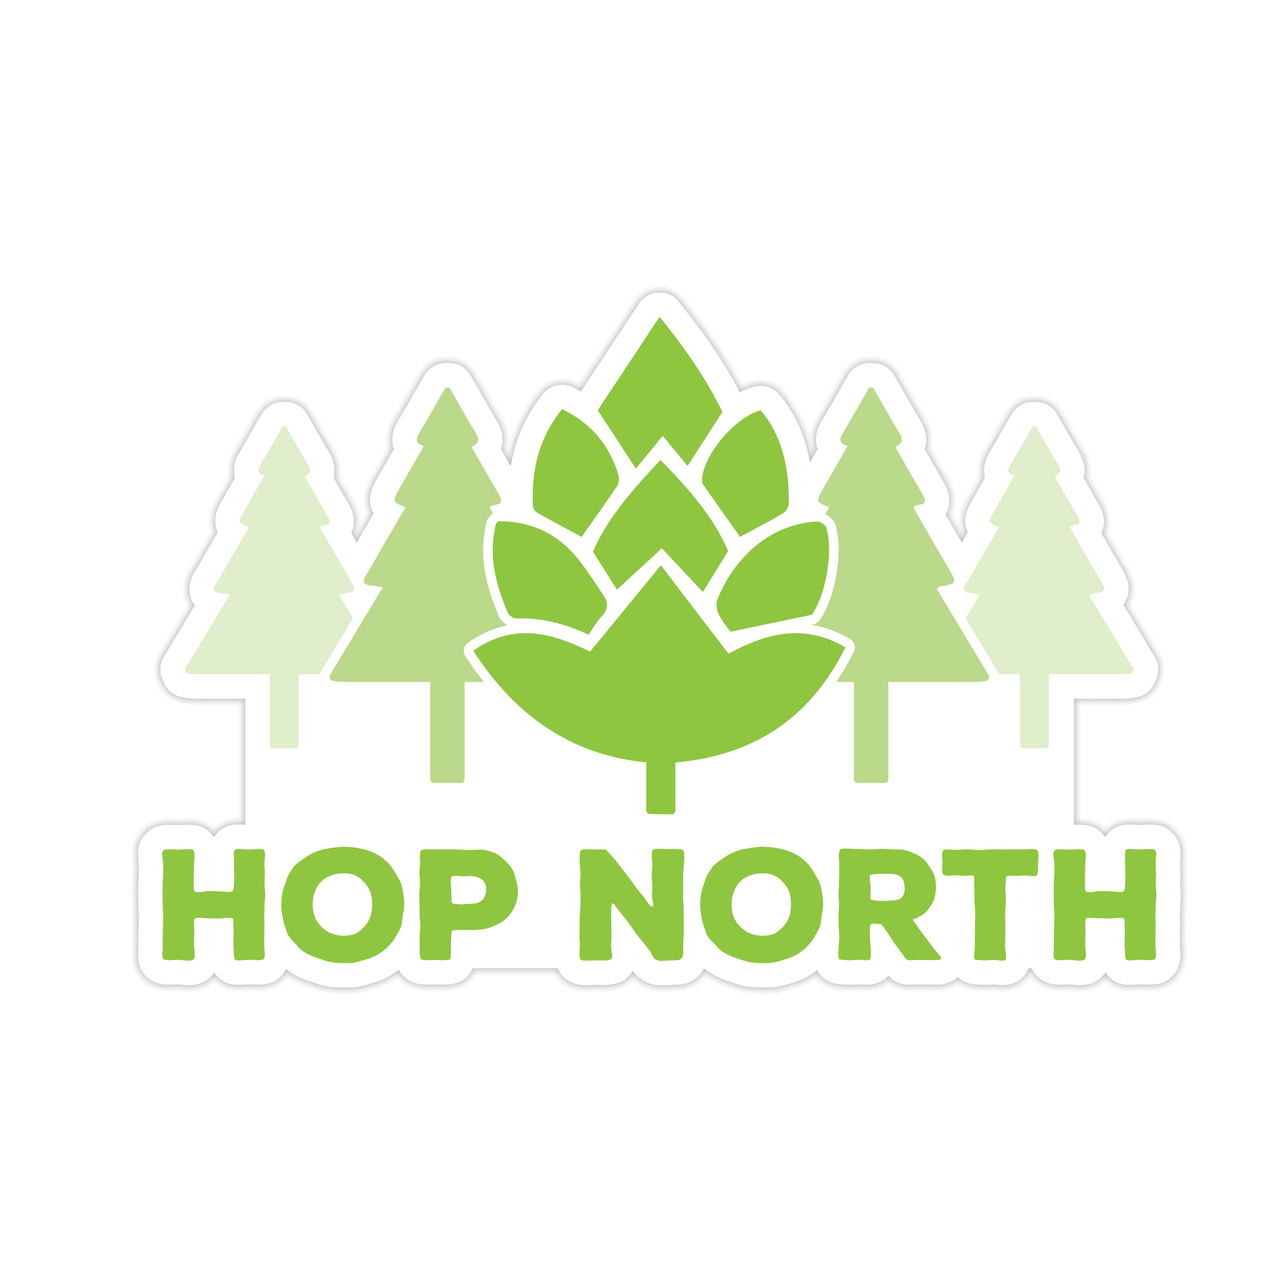 Hop North Sticker